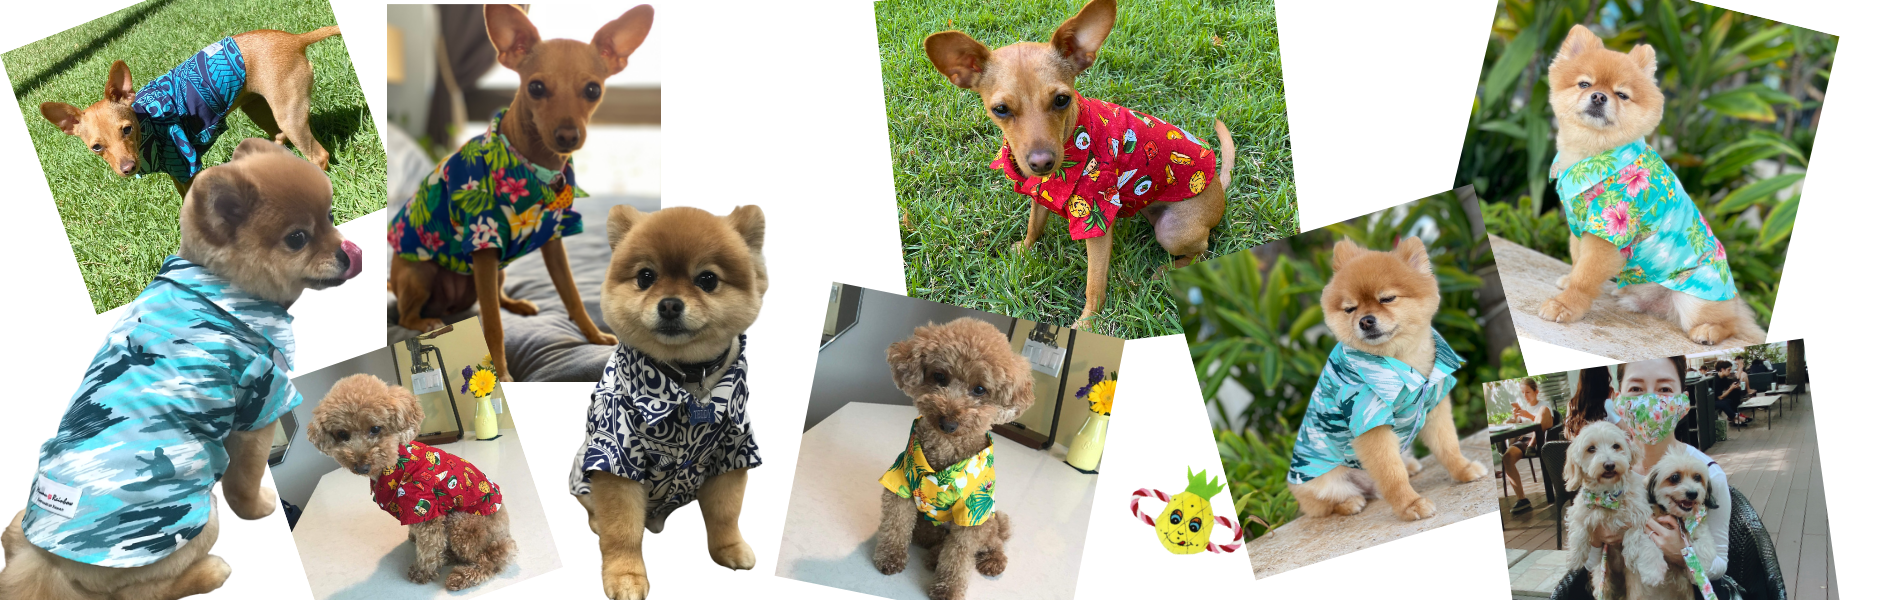 Dog's Hawaiian Shirts from Lulu Doggie Fashion